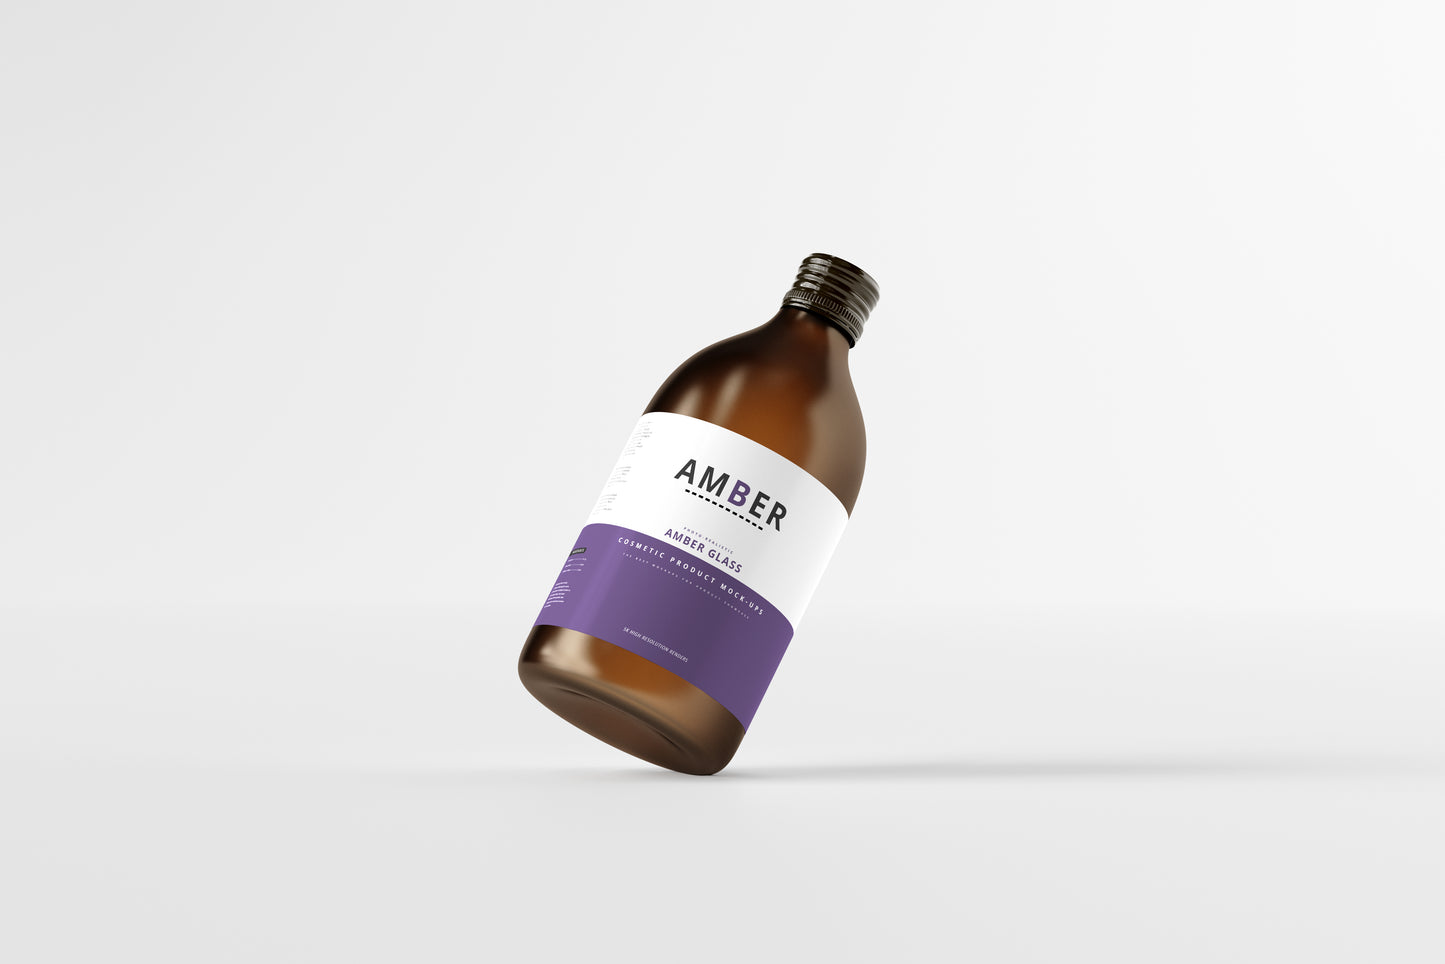 Amber Glass Bottle Mockups